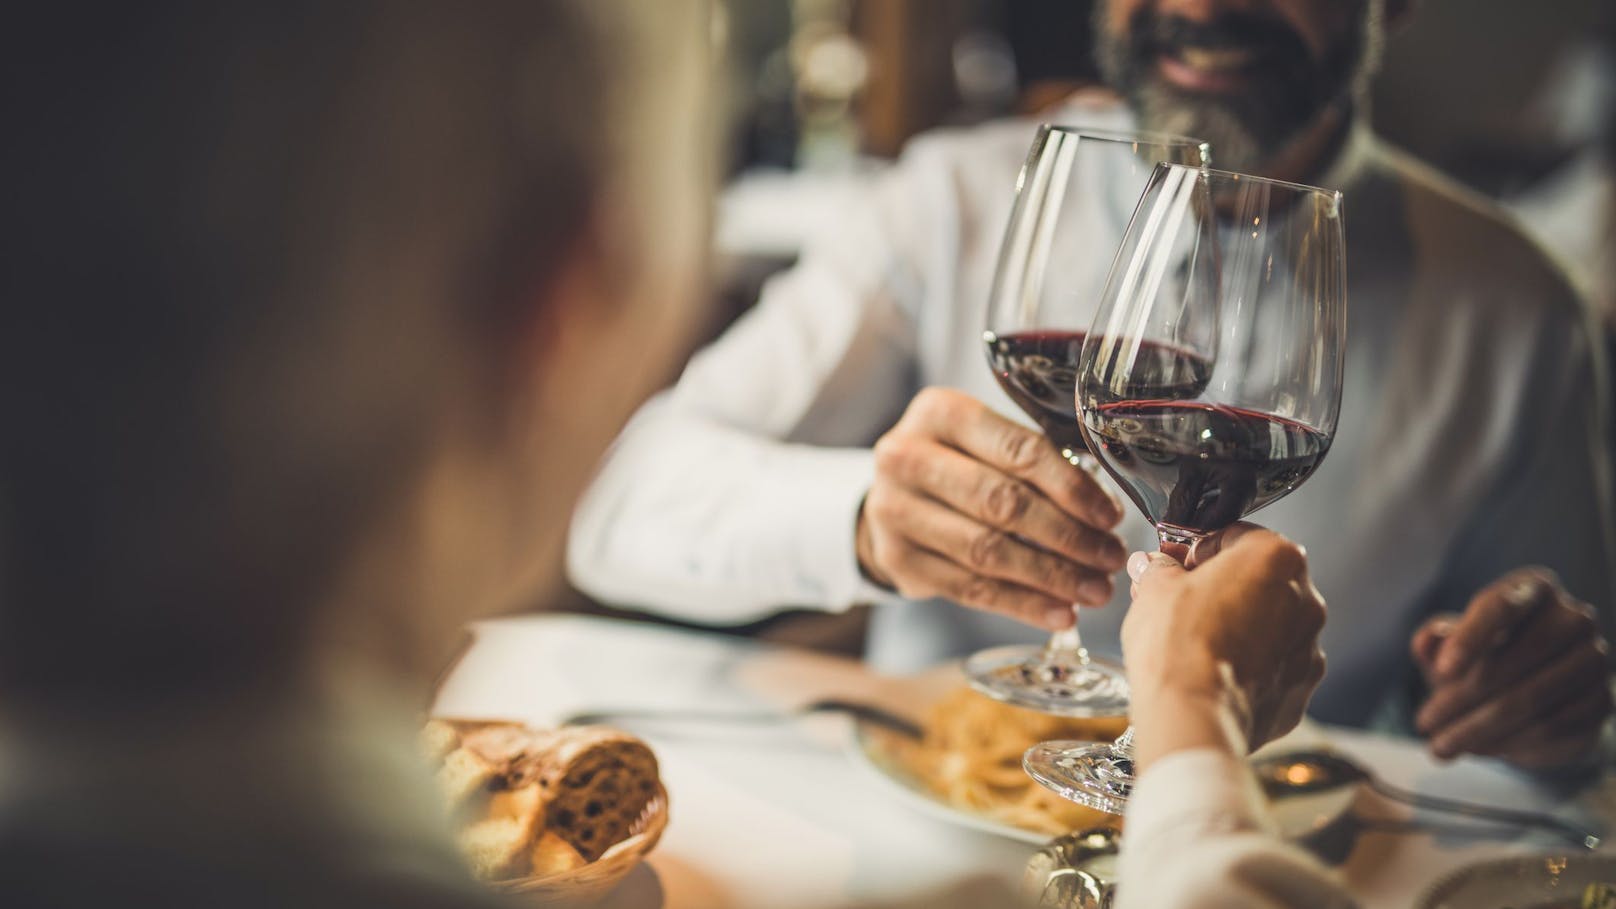 Wird dir im Restaurant vom Personal Wein über die Hose gegossen, hast du ein Anrecht auf Schadenersatz.